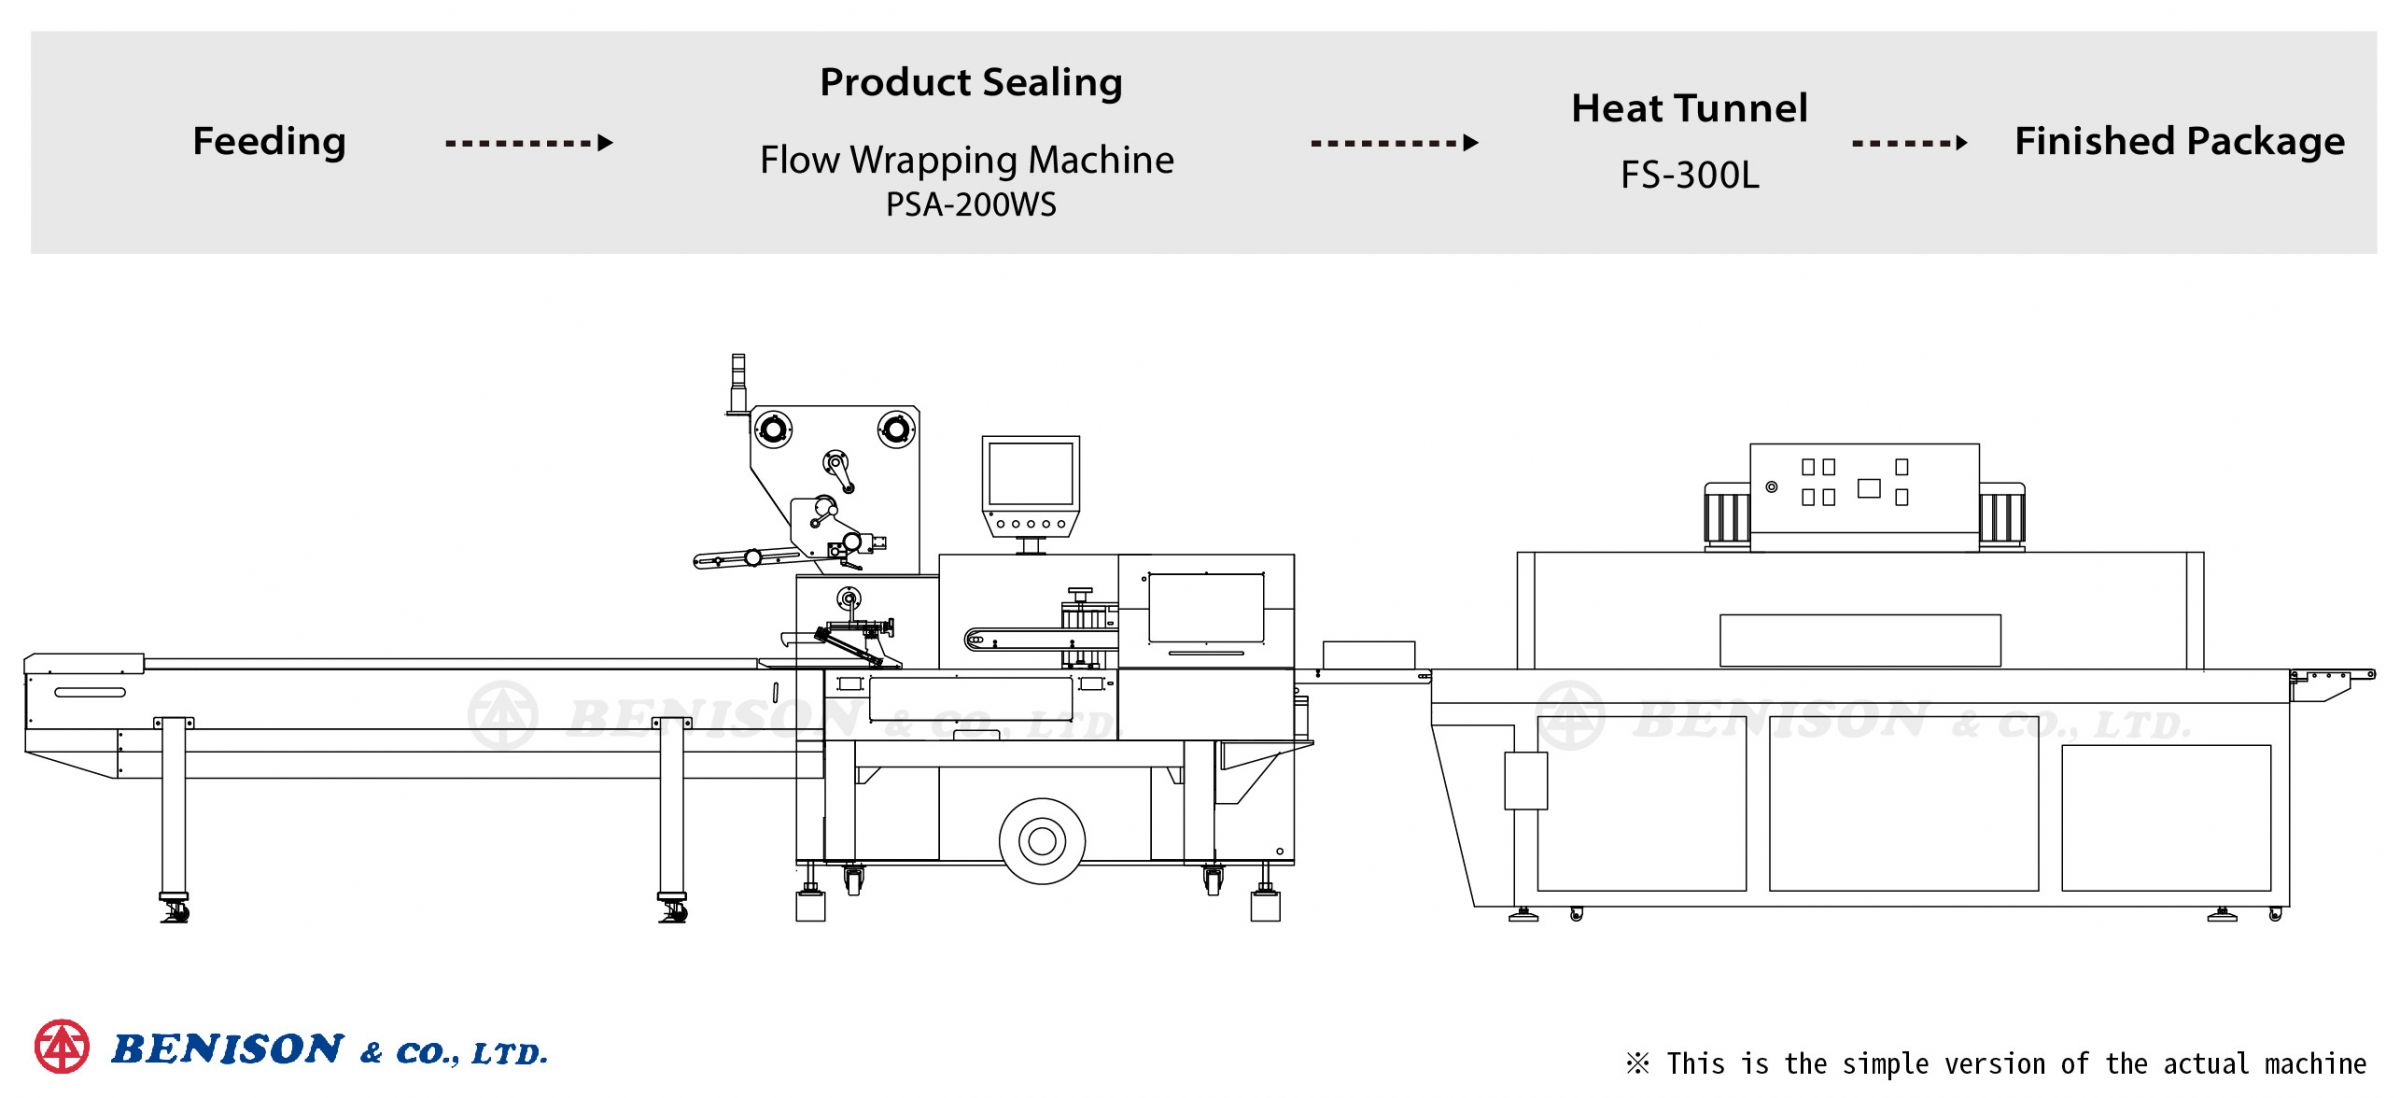 소켓 커버 제품 솔루션을 위한 플로우 랩핑 기계 PSA-200WS + 열 터널 FS-300L